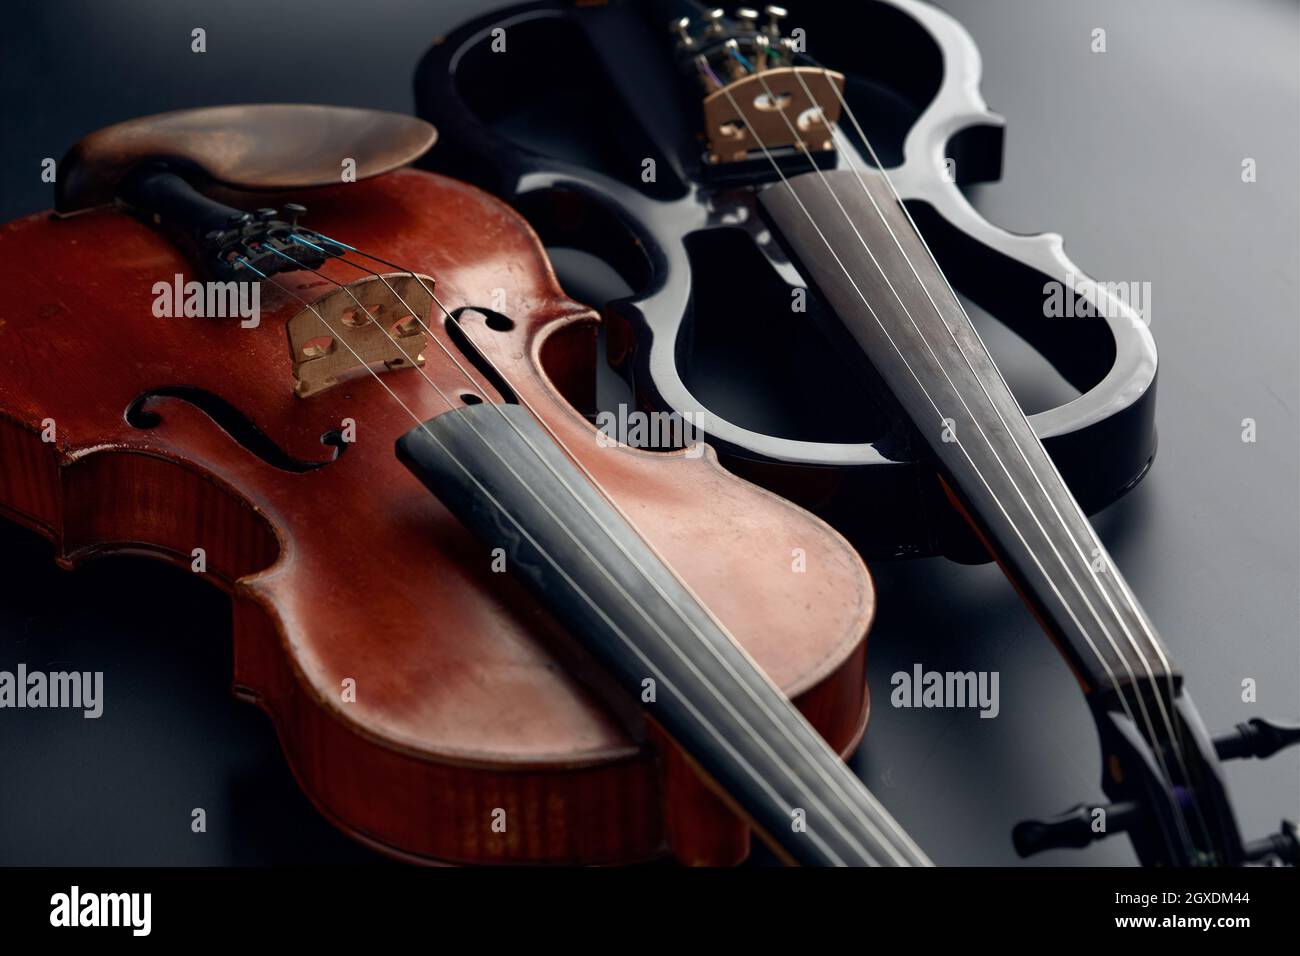 Violín retro de madera y viola eléctrico moderno, vista de primer plano,  nadie. Dos instrumentos musicales clásicos de cuerda, fondo negro  Fotografía de stock - Alamy